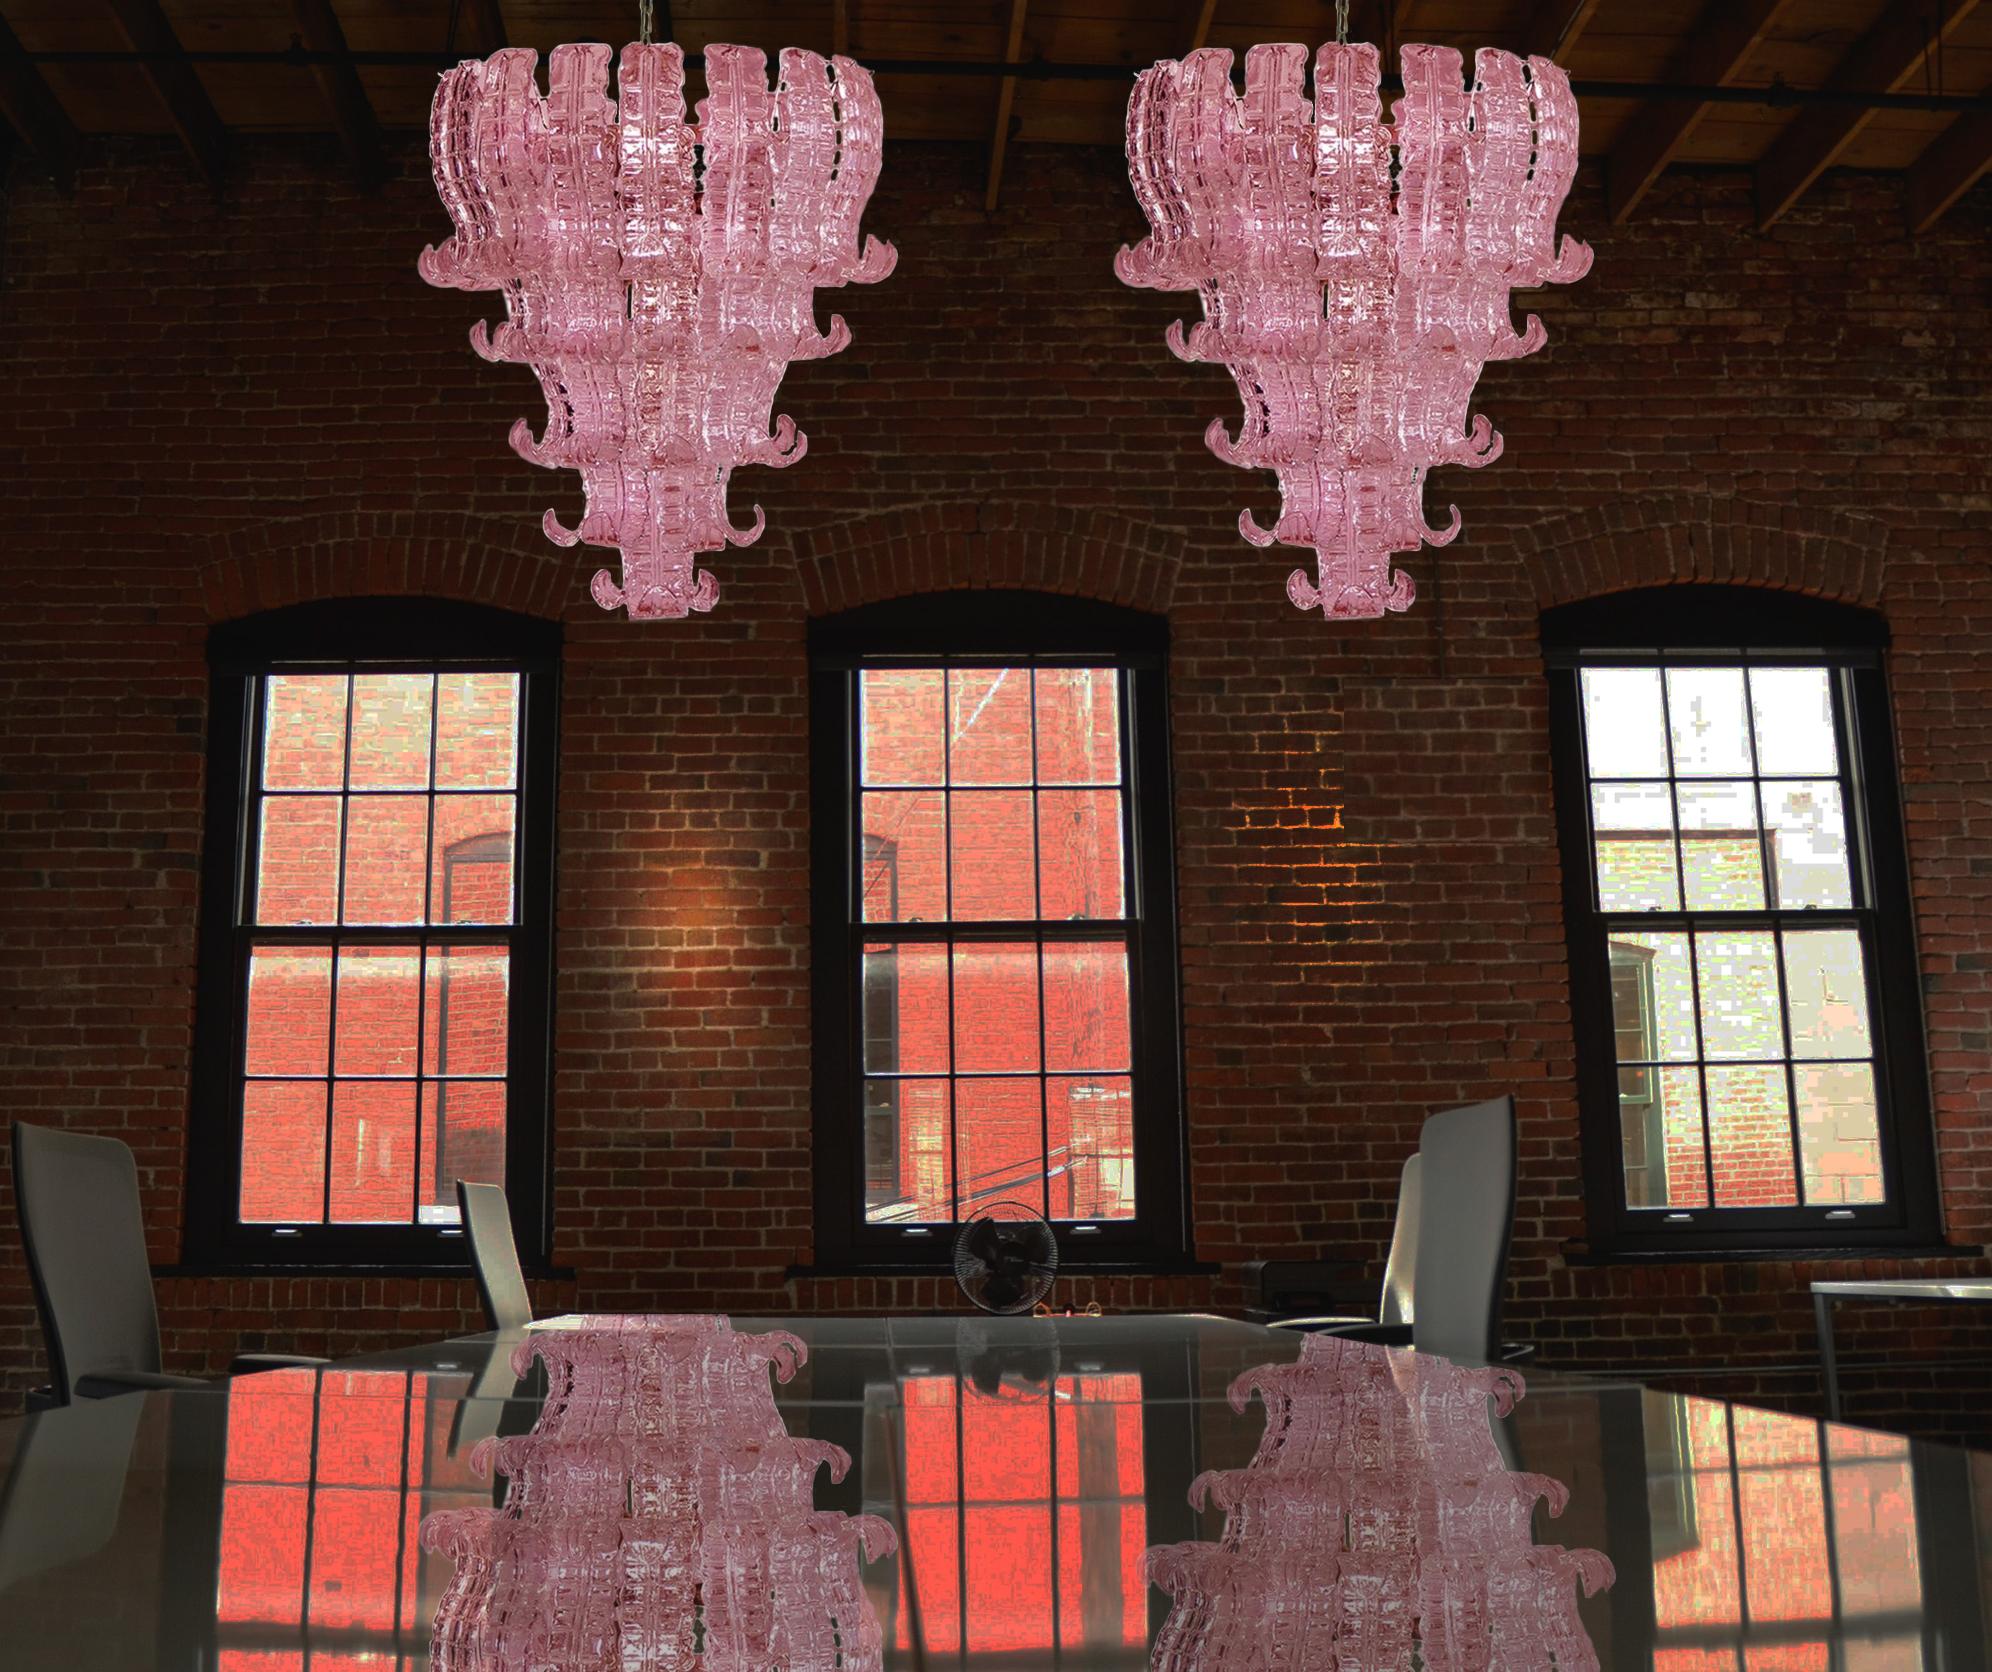 Schönes und großes Paar italienischer Murano-Kronleuchter, bestehend aus 52 prächtigen rosa Gläsern, die ein sehr elegantes Aussehen verleihen
Zeitraum: 1970s
Abmessungen: 55.10 Zoll (140 cm) Höhe mit Kette, 31,50 Zoll (80 cm) Höhe ohne Kette,